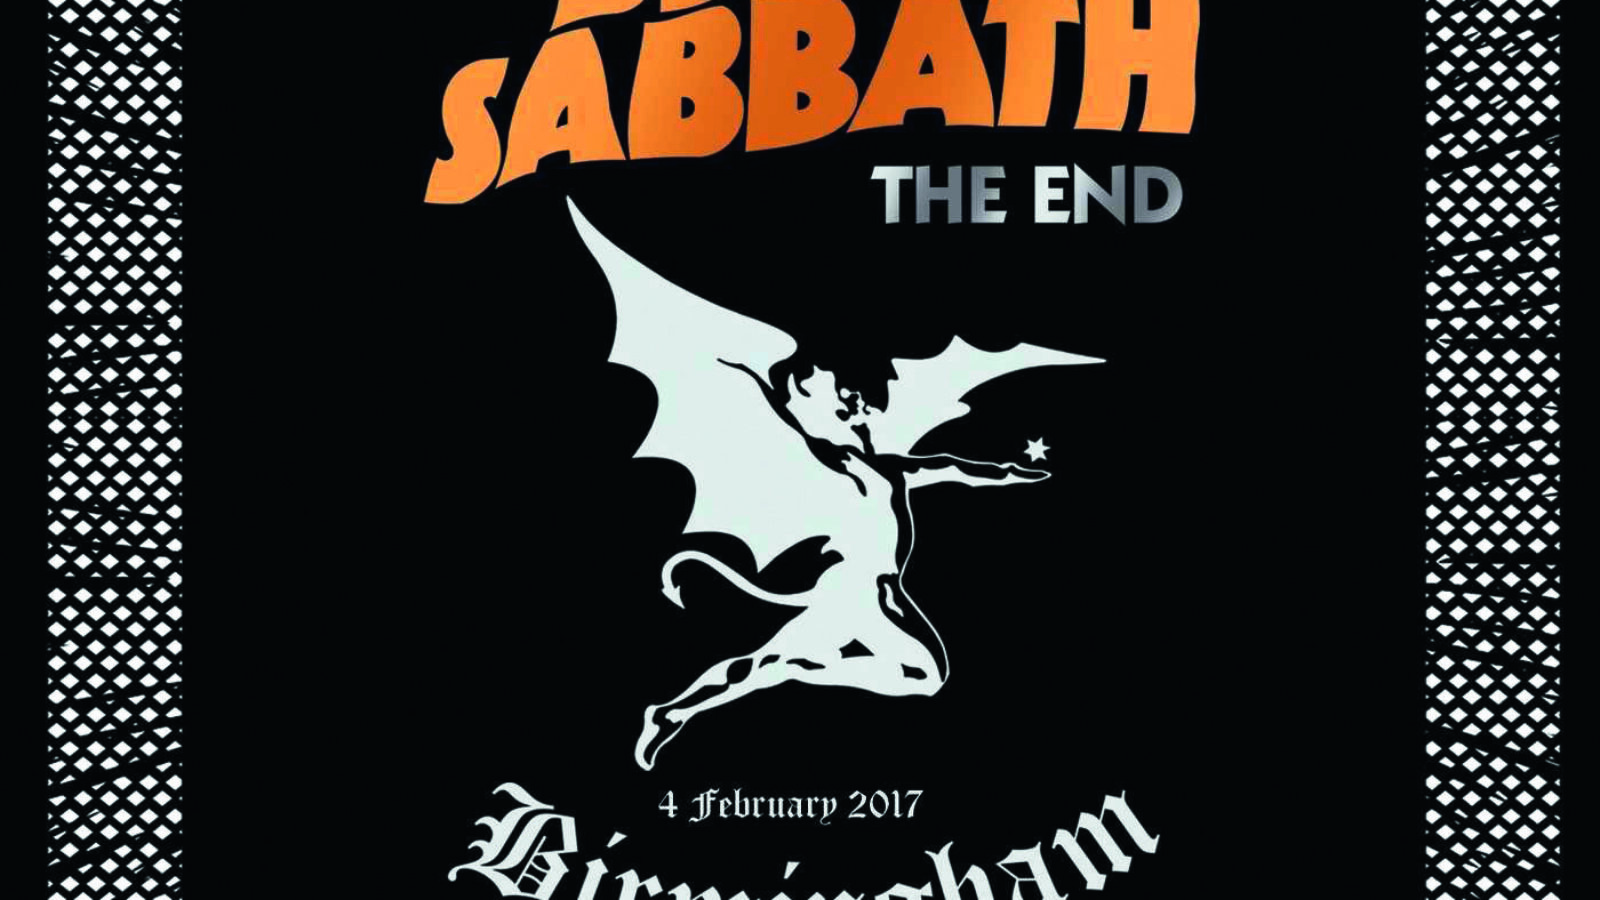 Black Sabbath – The End